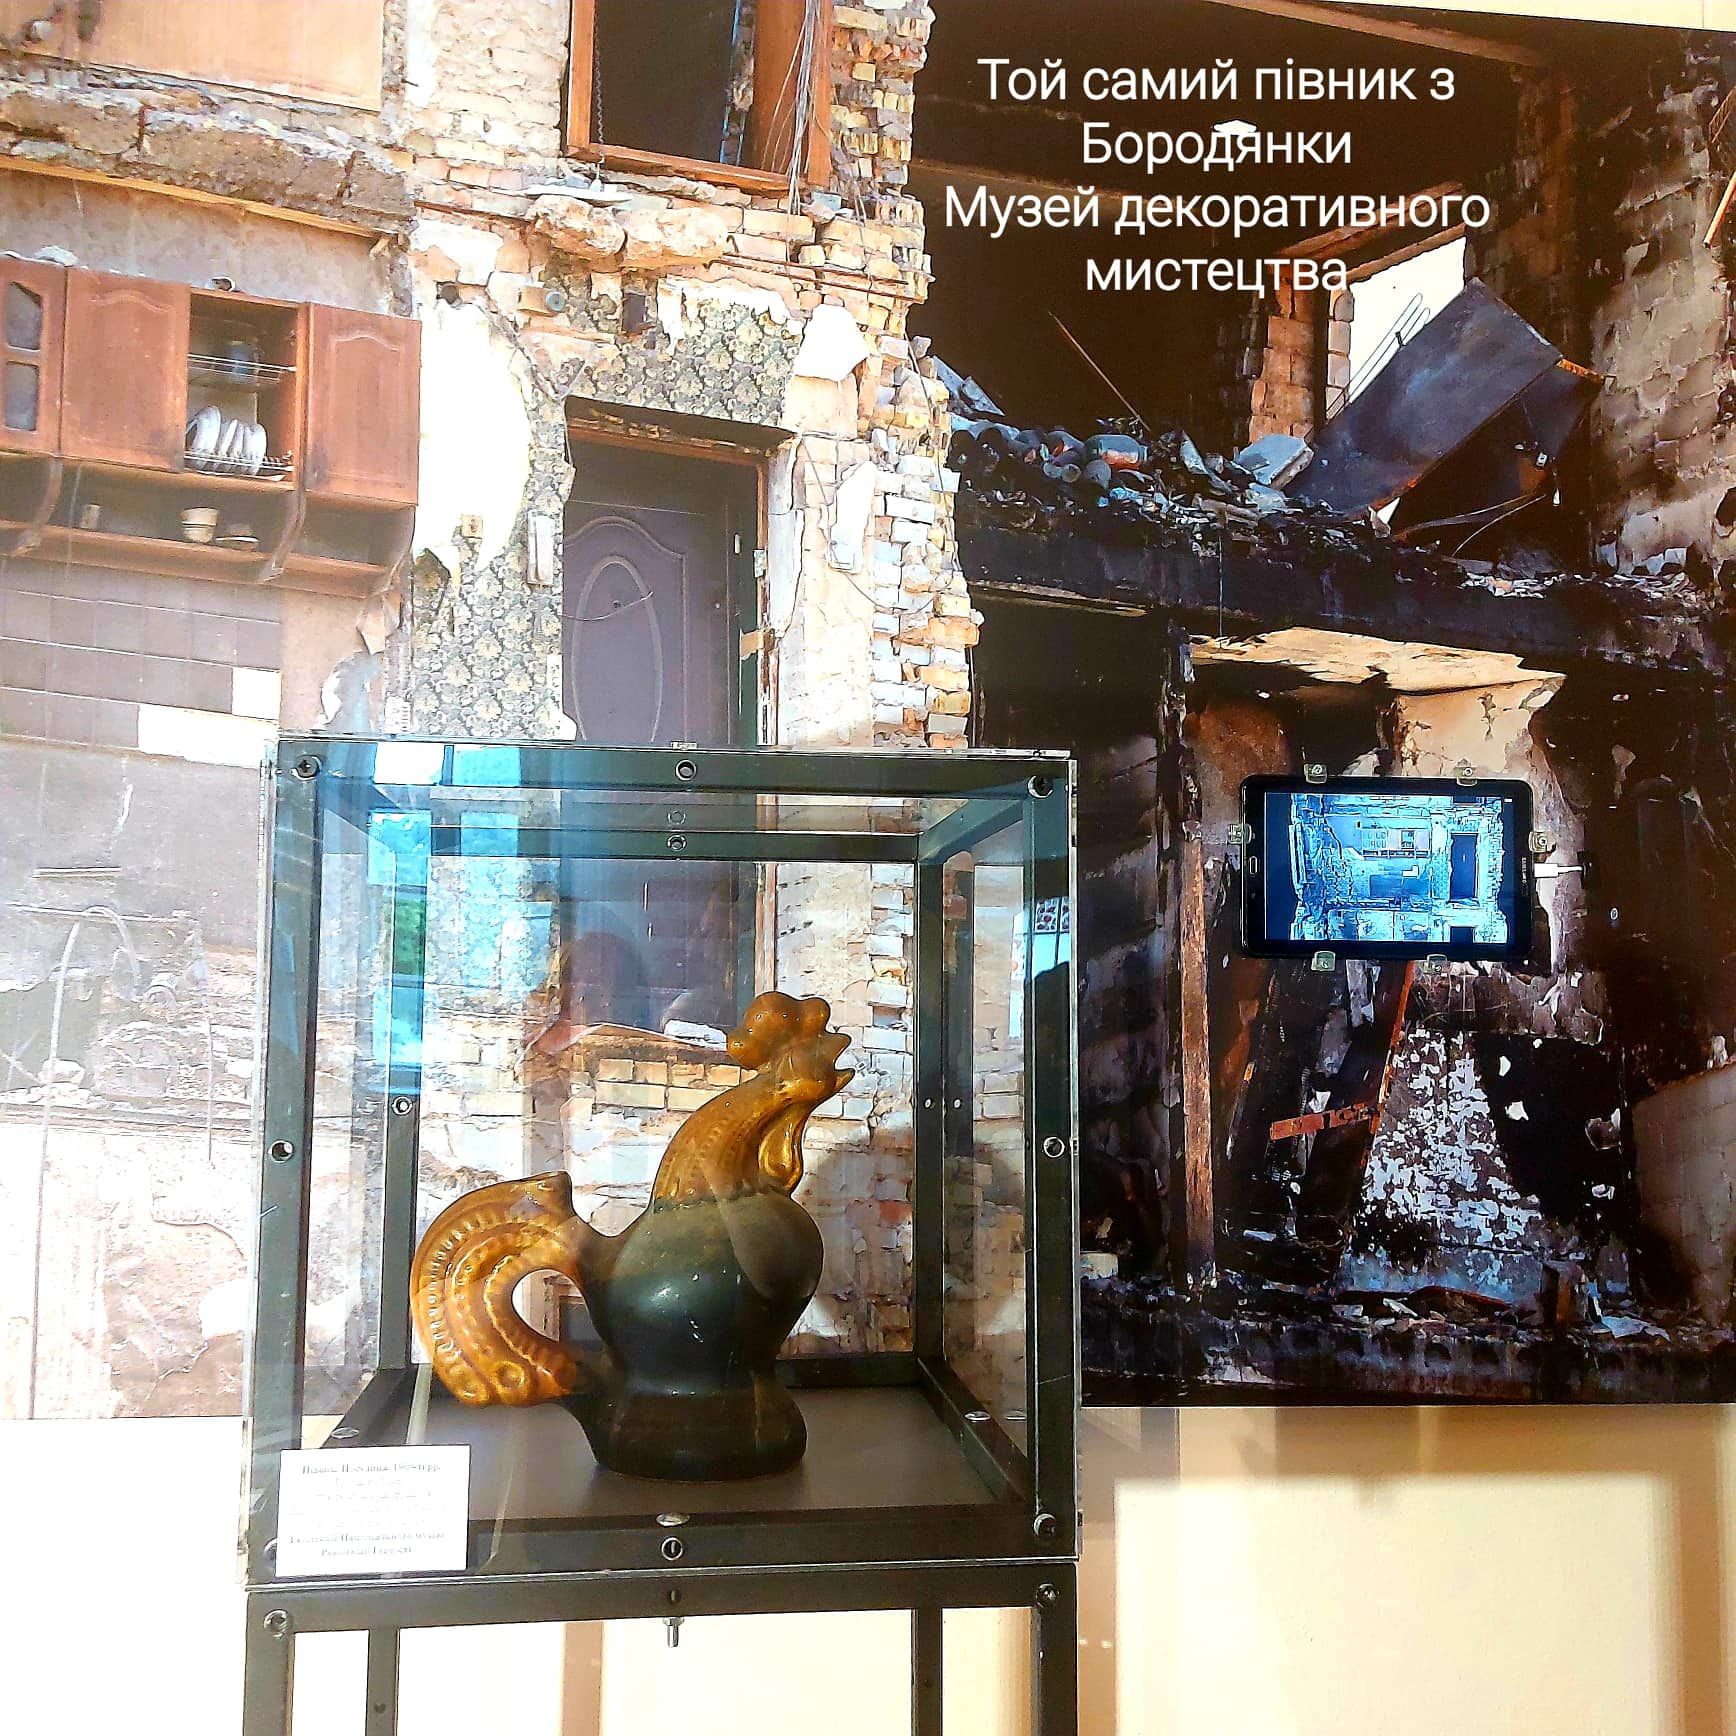 У Києві вперше в музеї показують легендарного керамічного півника з Бородянки